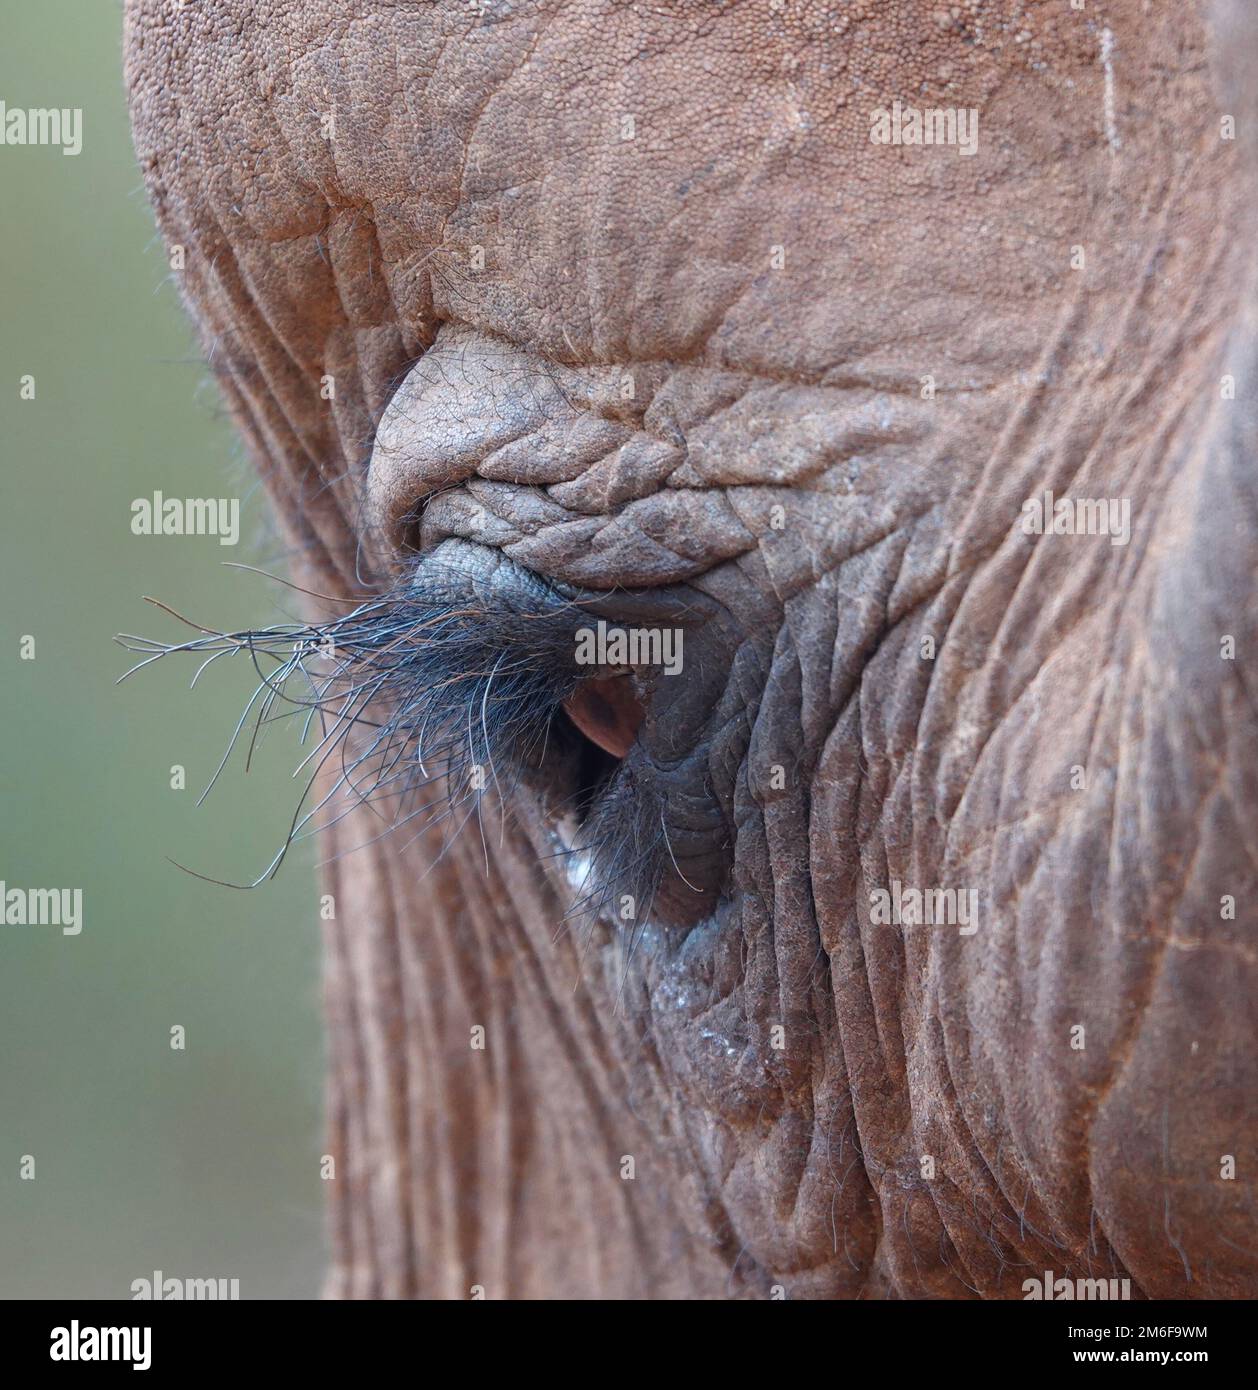 Elephant Eye Picture taken in Kenya Stock Photo